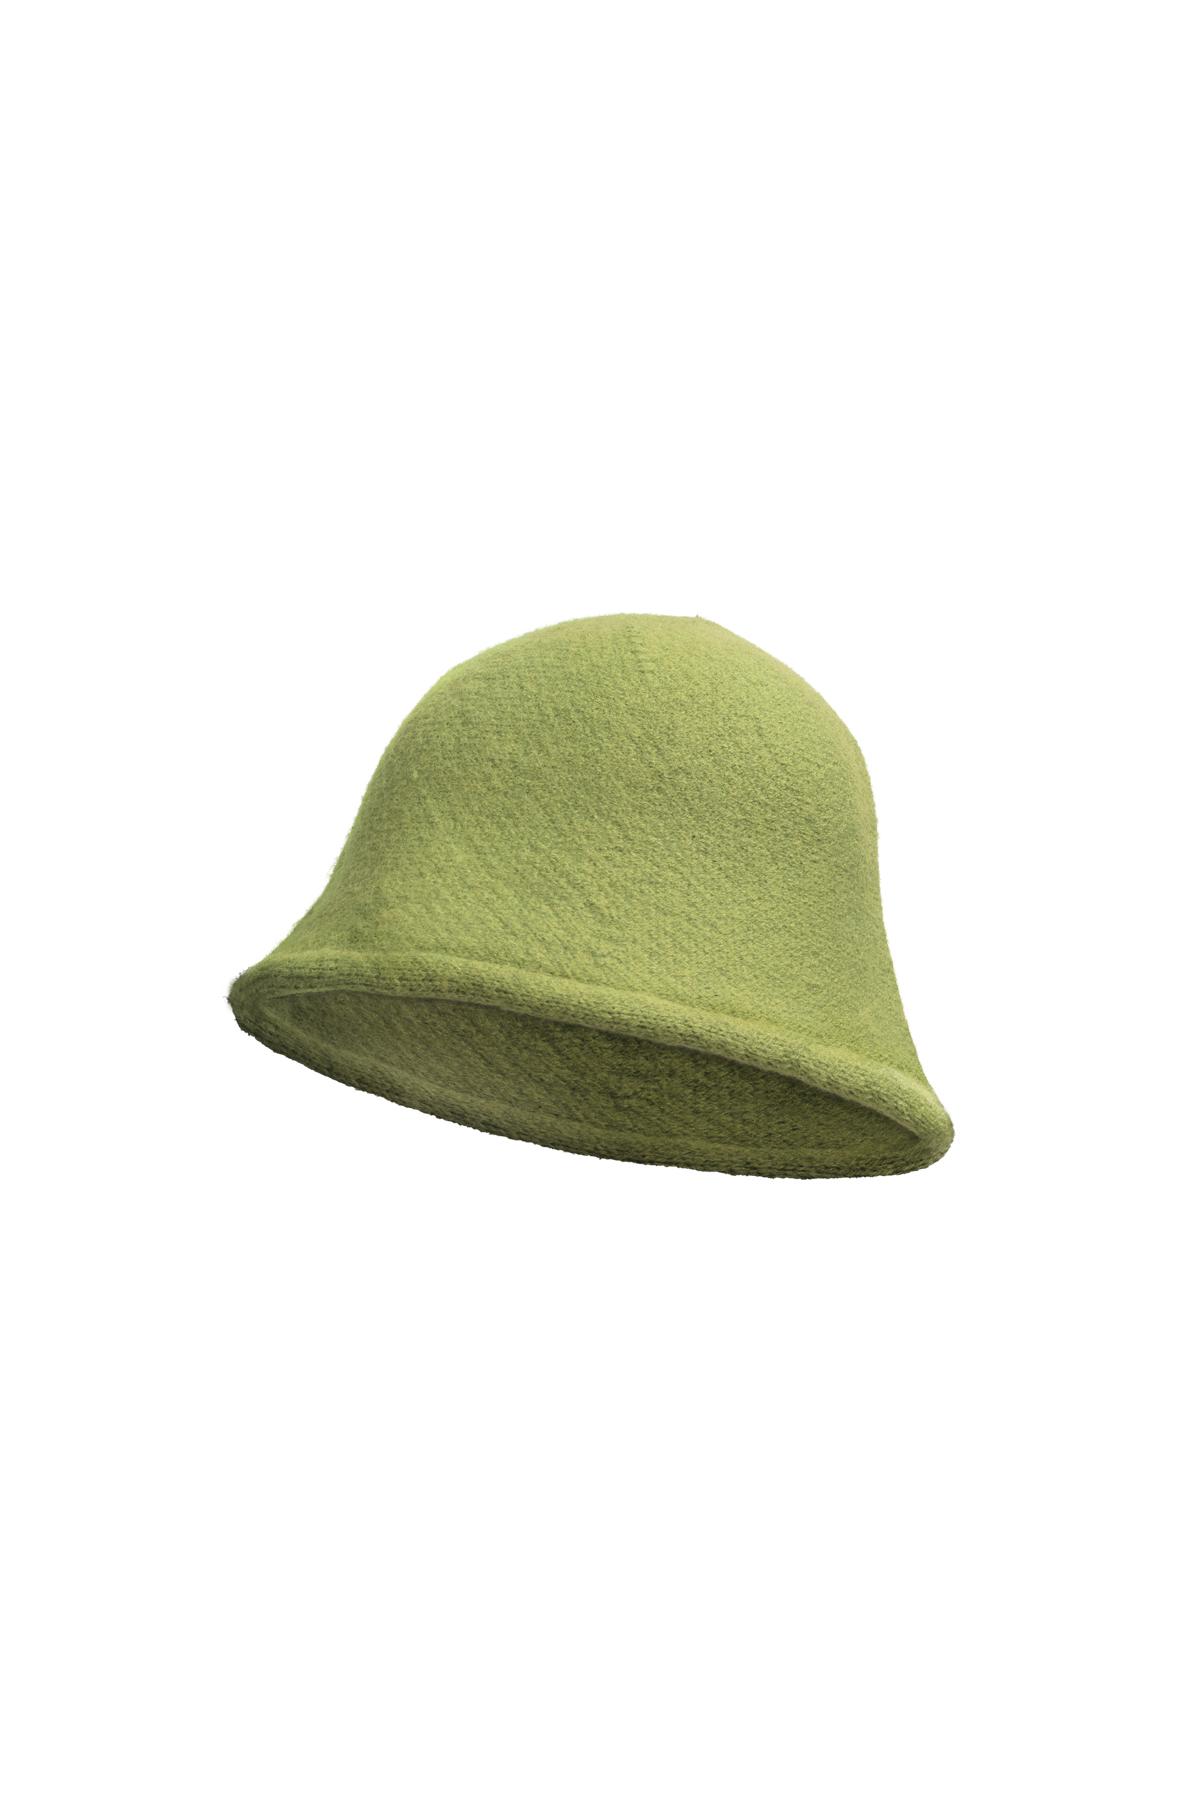 Kova şapka düz renk Green Acrylic h5 